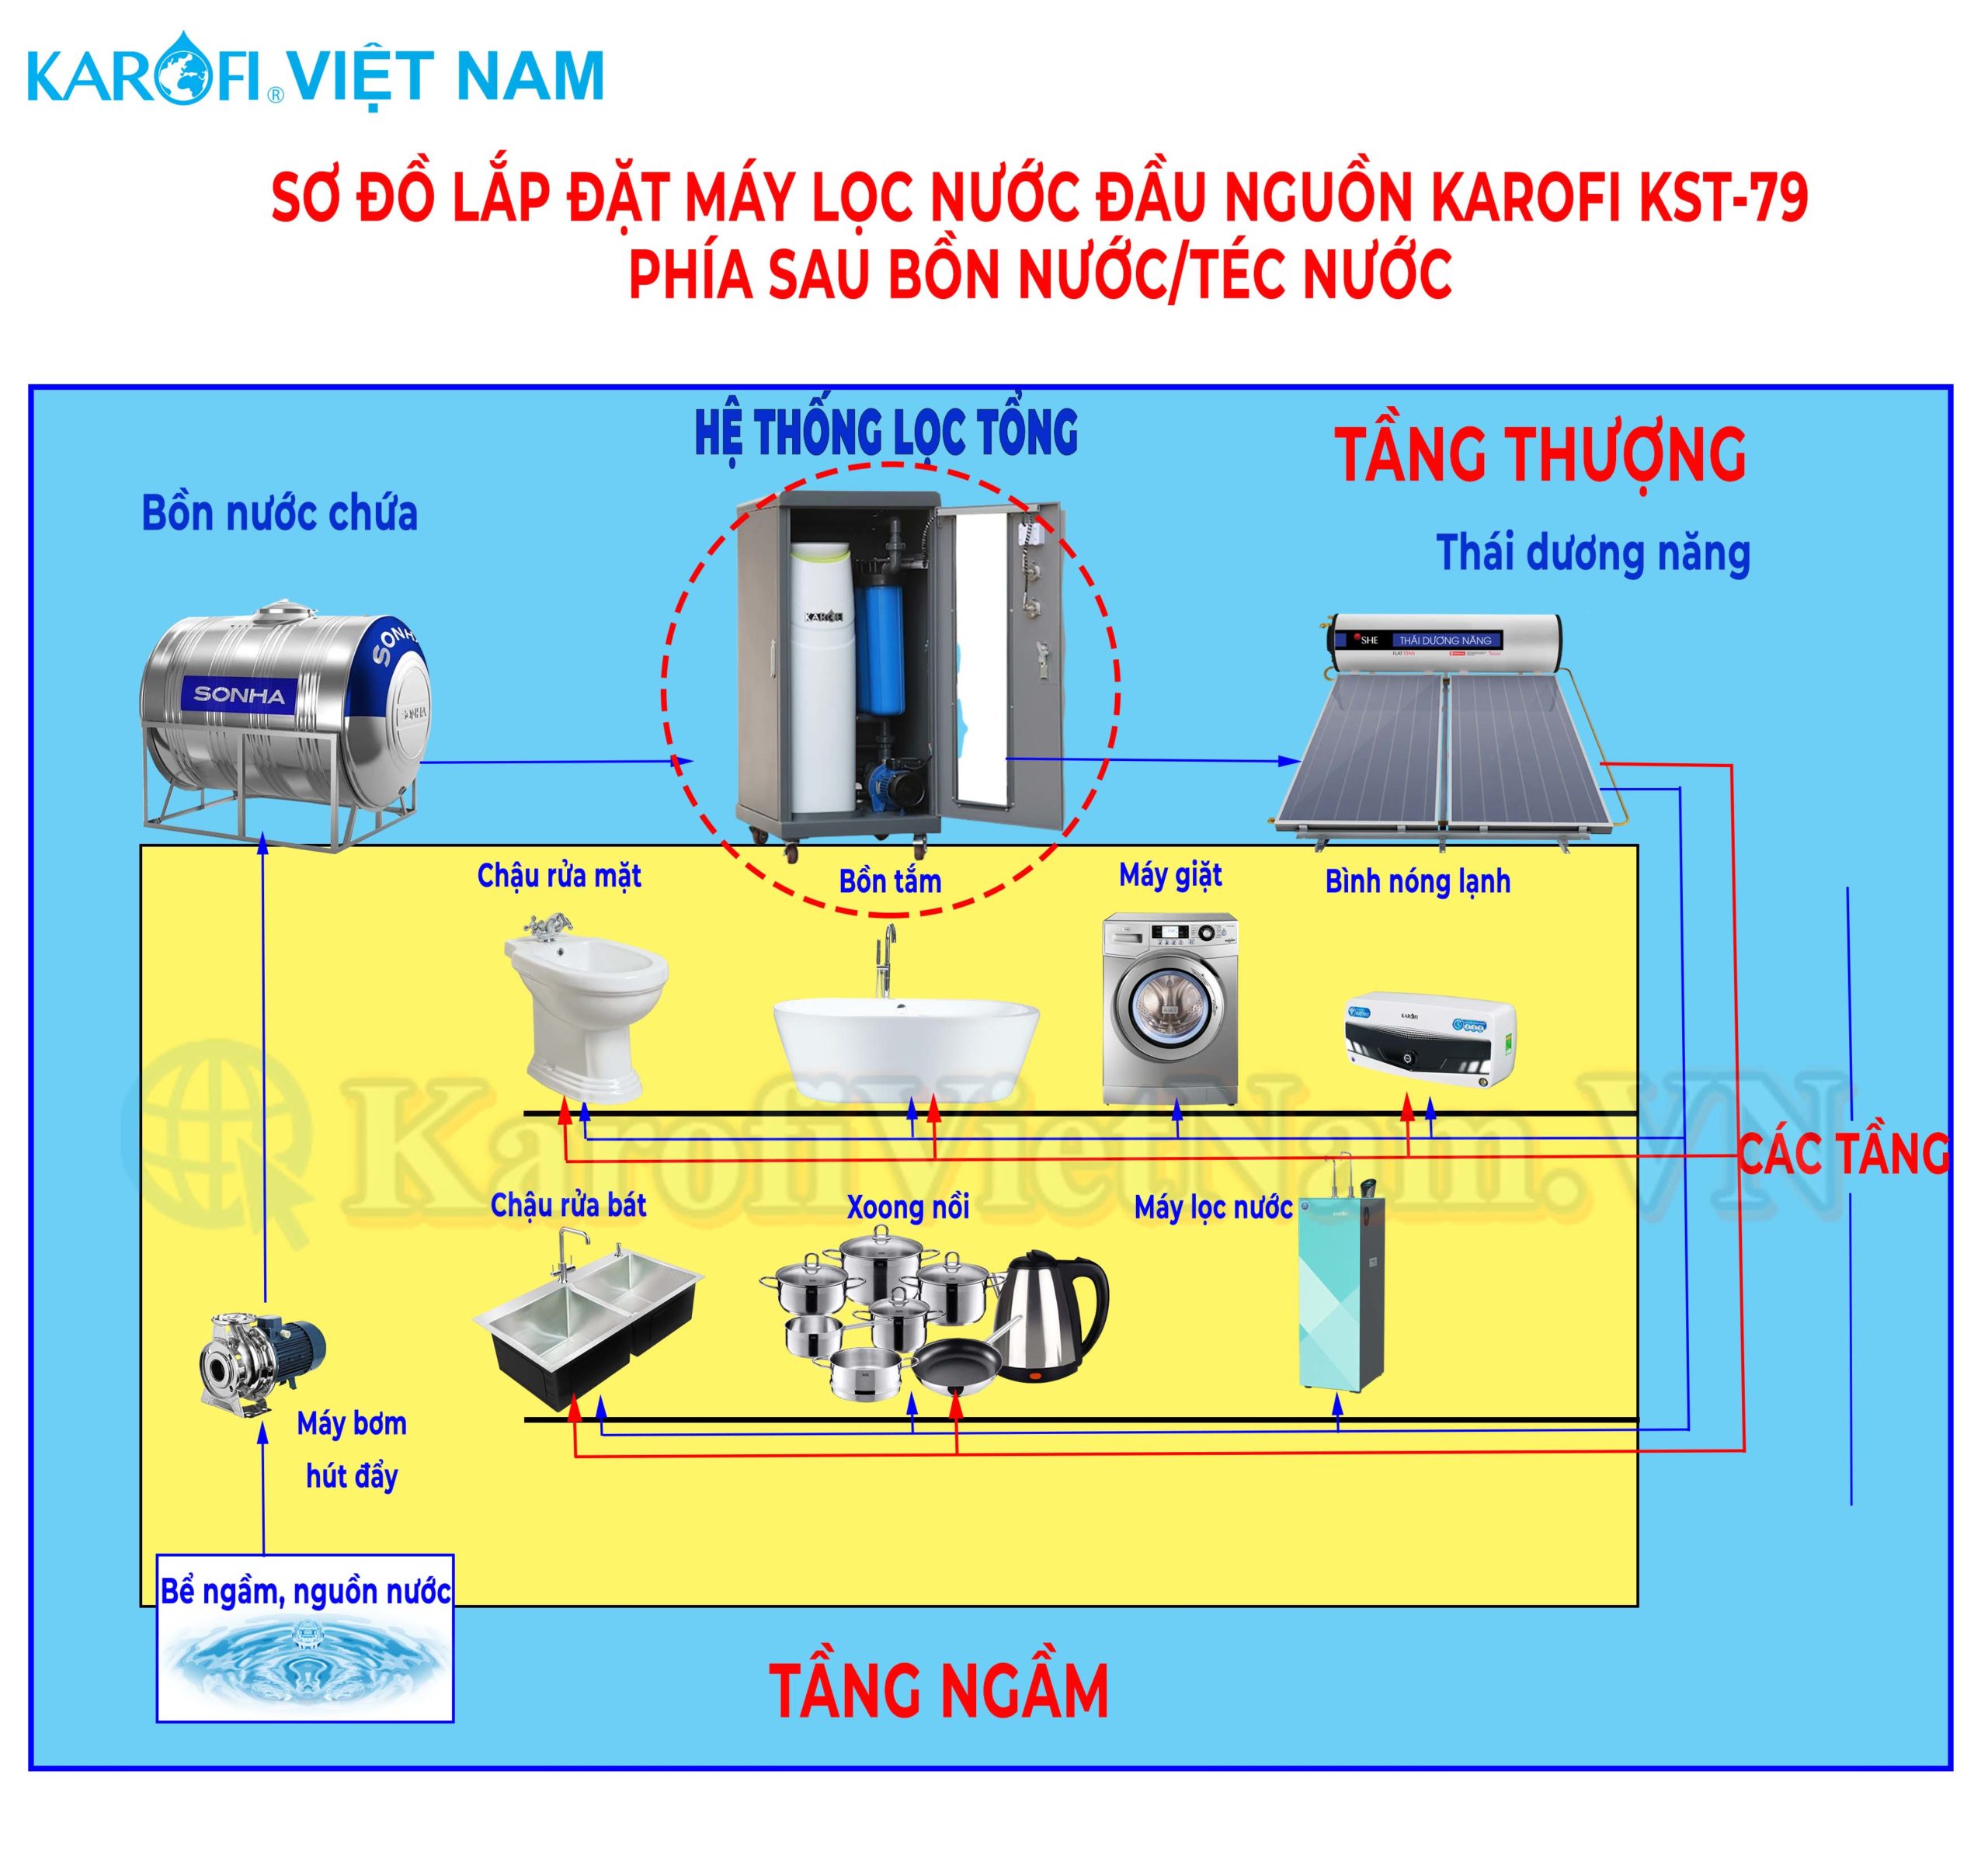 Sơ đồ lắp đặt hệ thống lọc đầu nguồn Karofi KST-79 sau bồn nước